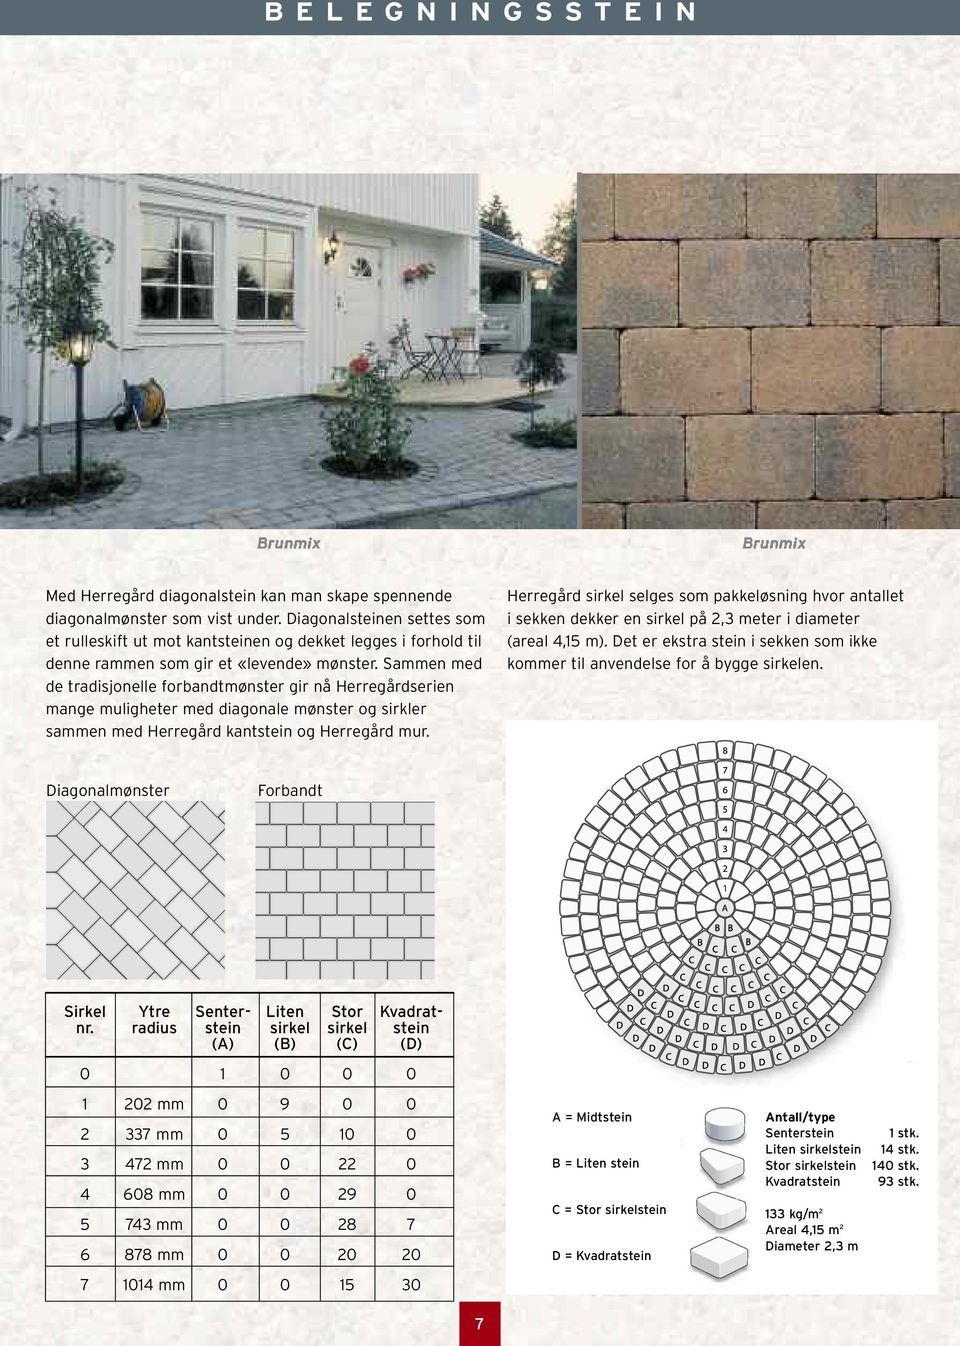 Sammen med de tradisjonelle forbandtmønster gir nå Herregårdserien mange muligheter med diagonale mønster og sirkler sammen med Herregård kantstein og Herregård mur.